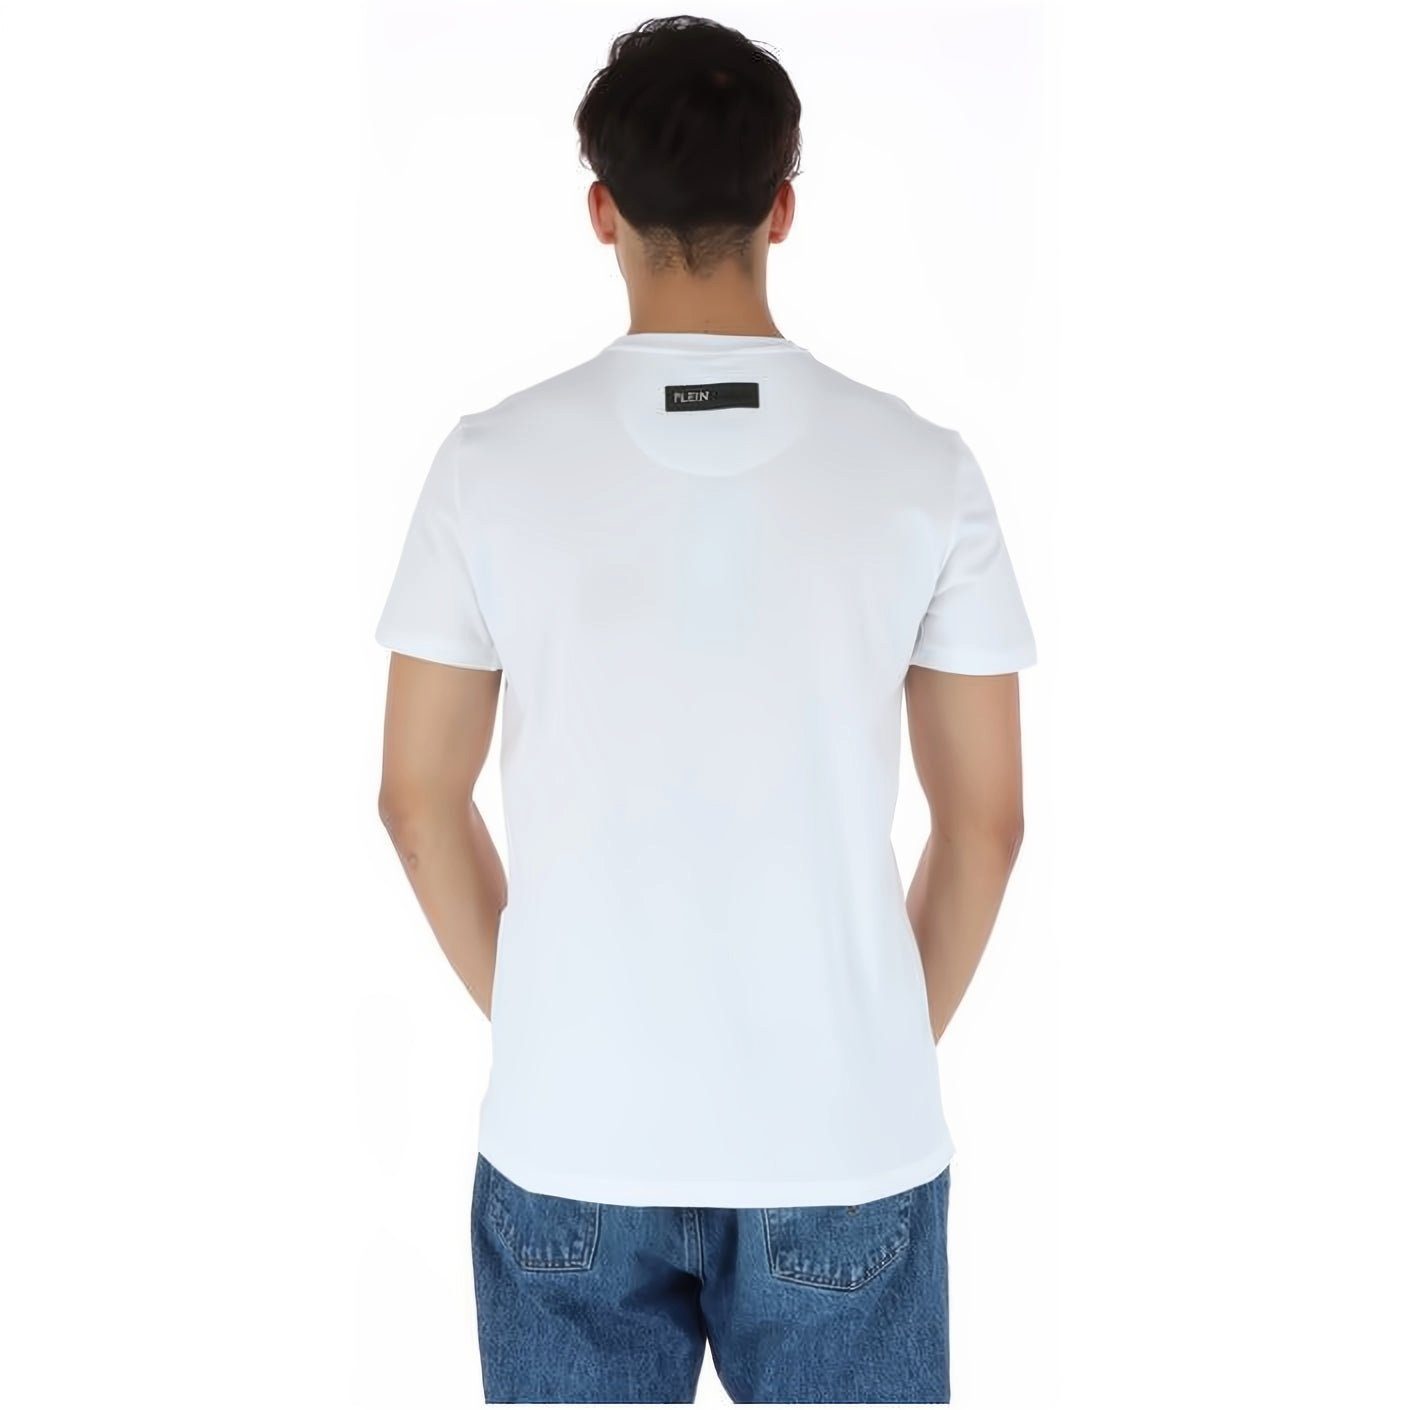 ROUND Stylischer Farbauswahl PLEIN Tragekomfort, SPORT T-Shirt hoher vielfältige Look, NECK